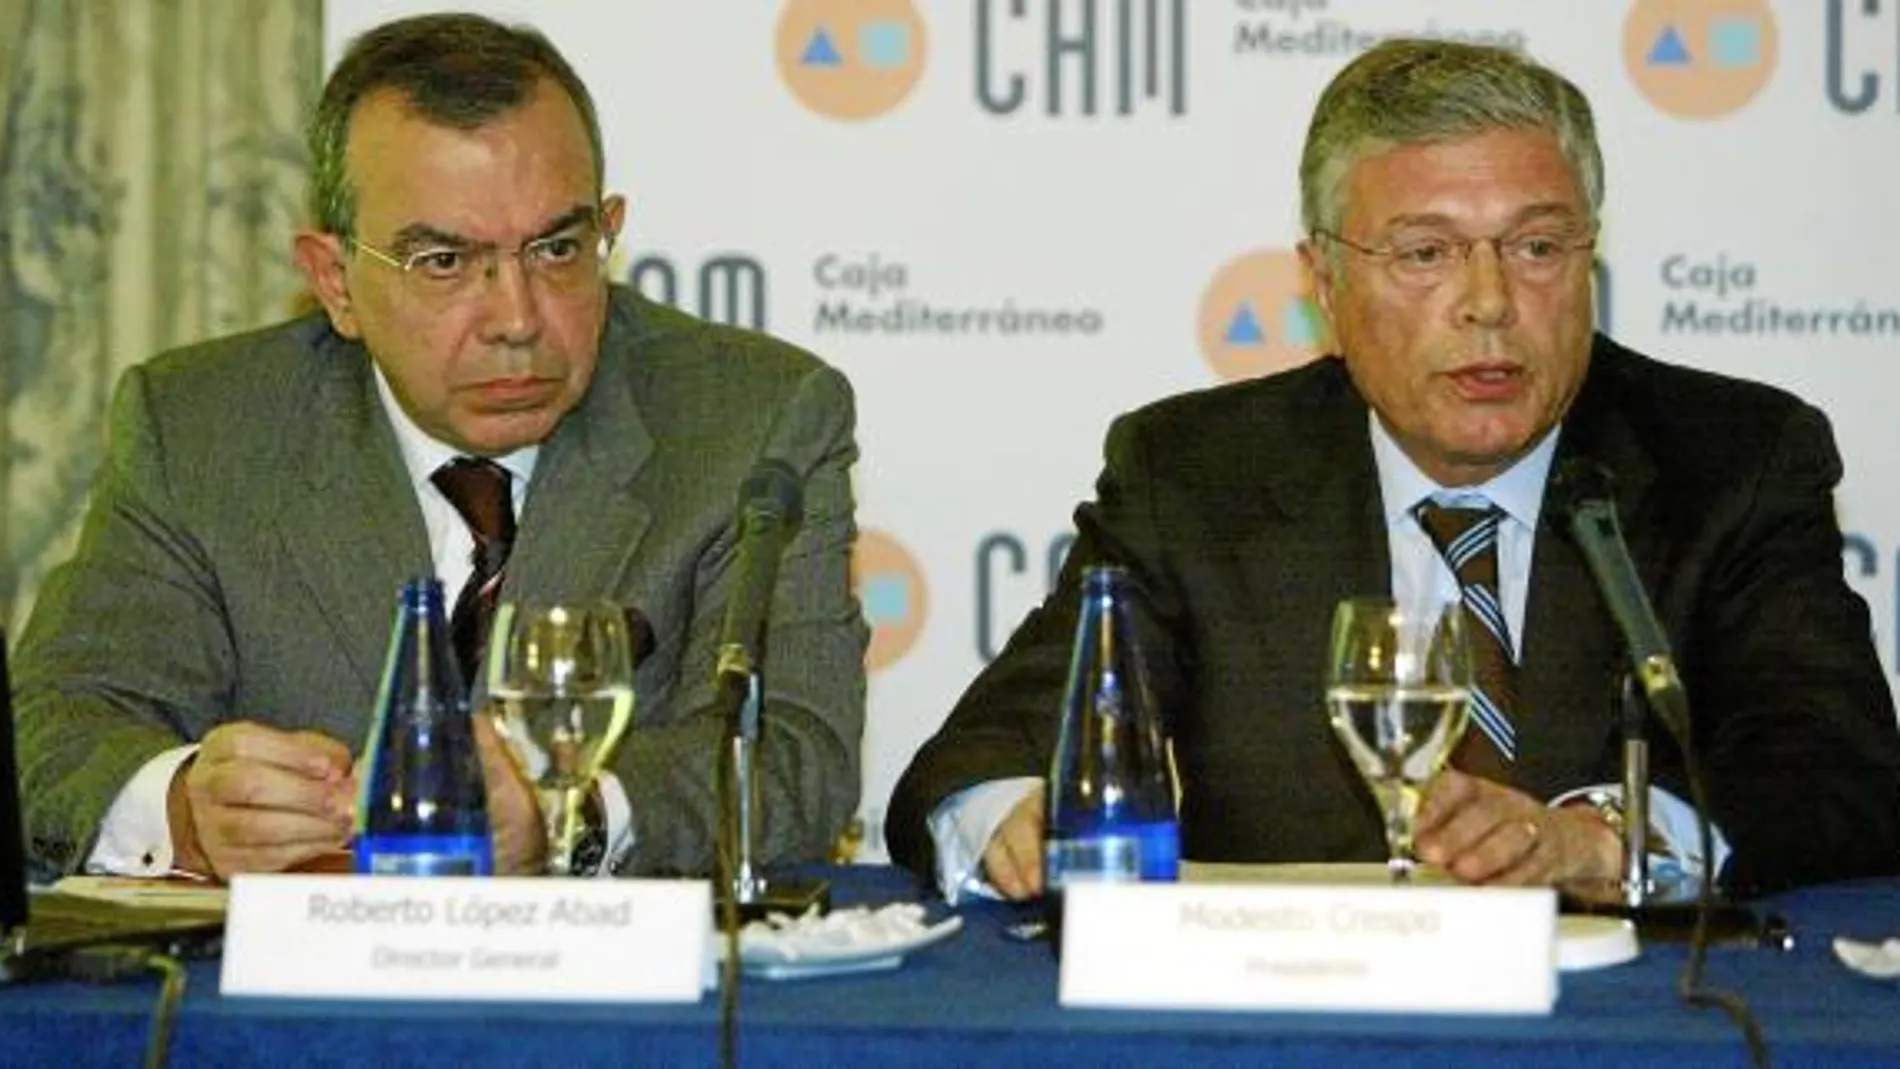 A la derecha, el presidente de la CAM y del nuevo grupo constituido, Modesto Crespo, y el director de la caja alicantina, Roberto López